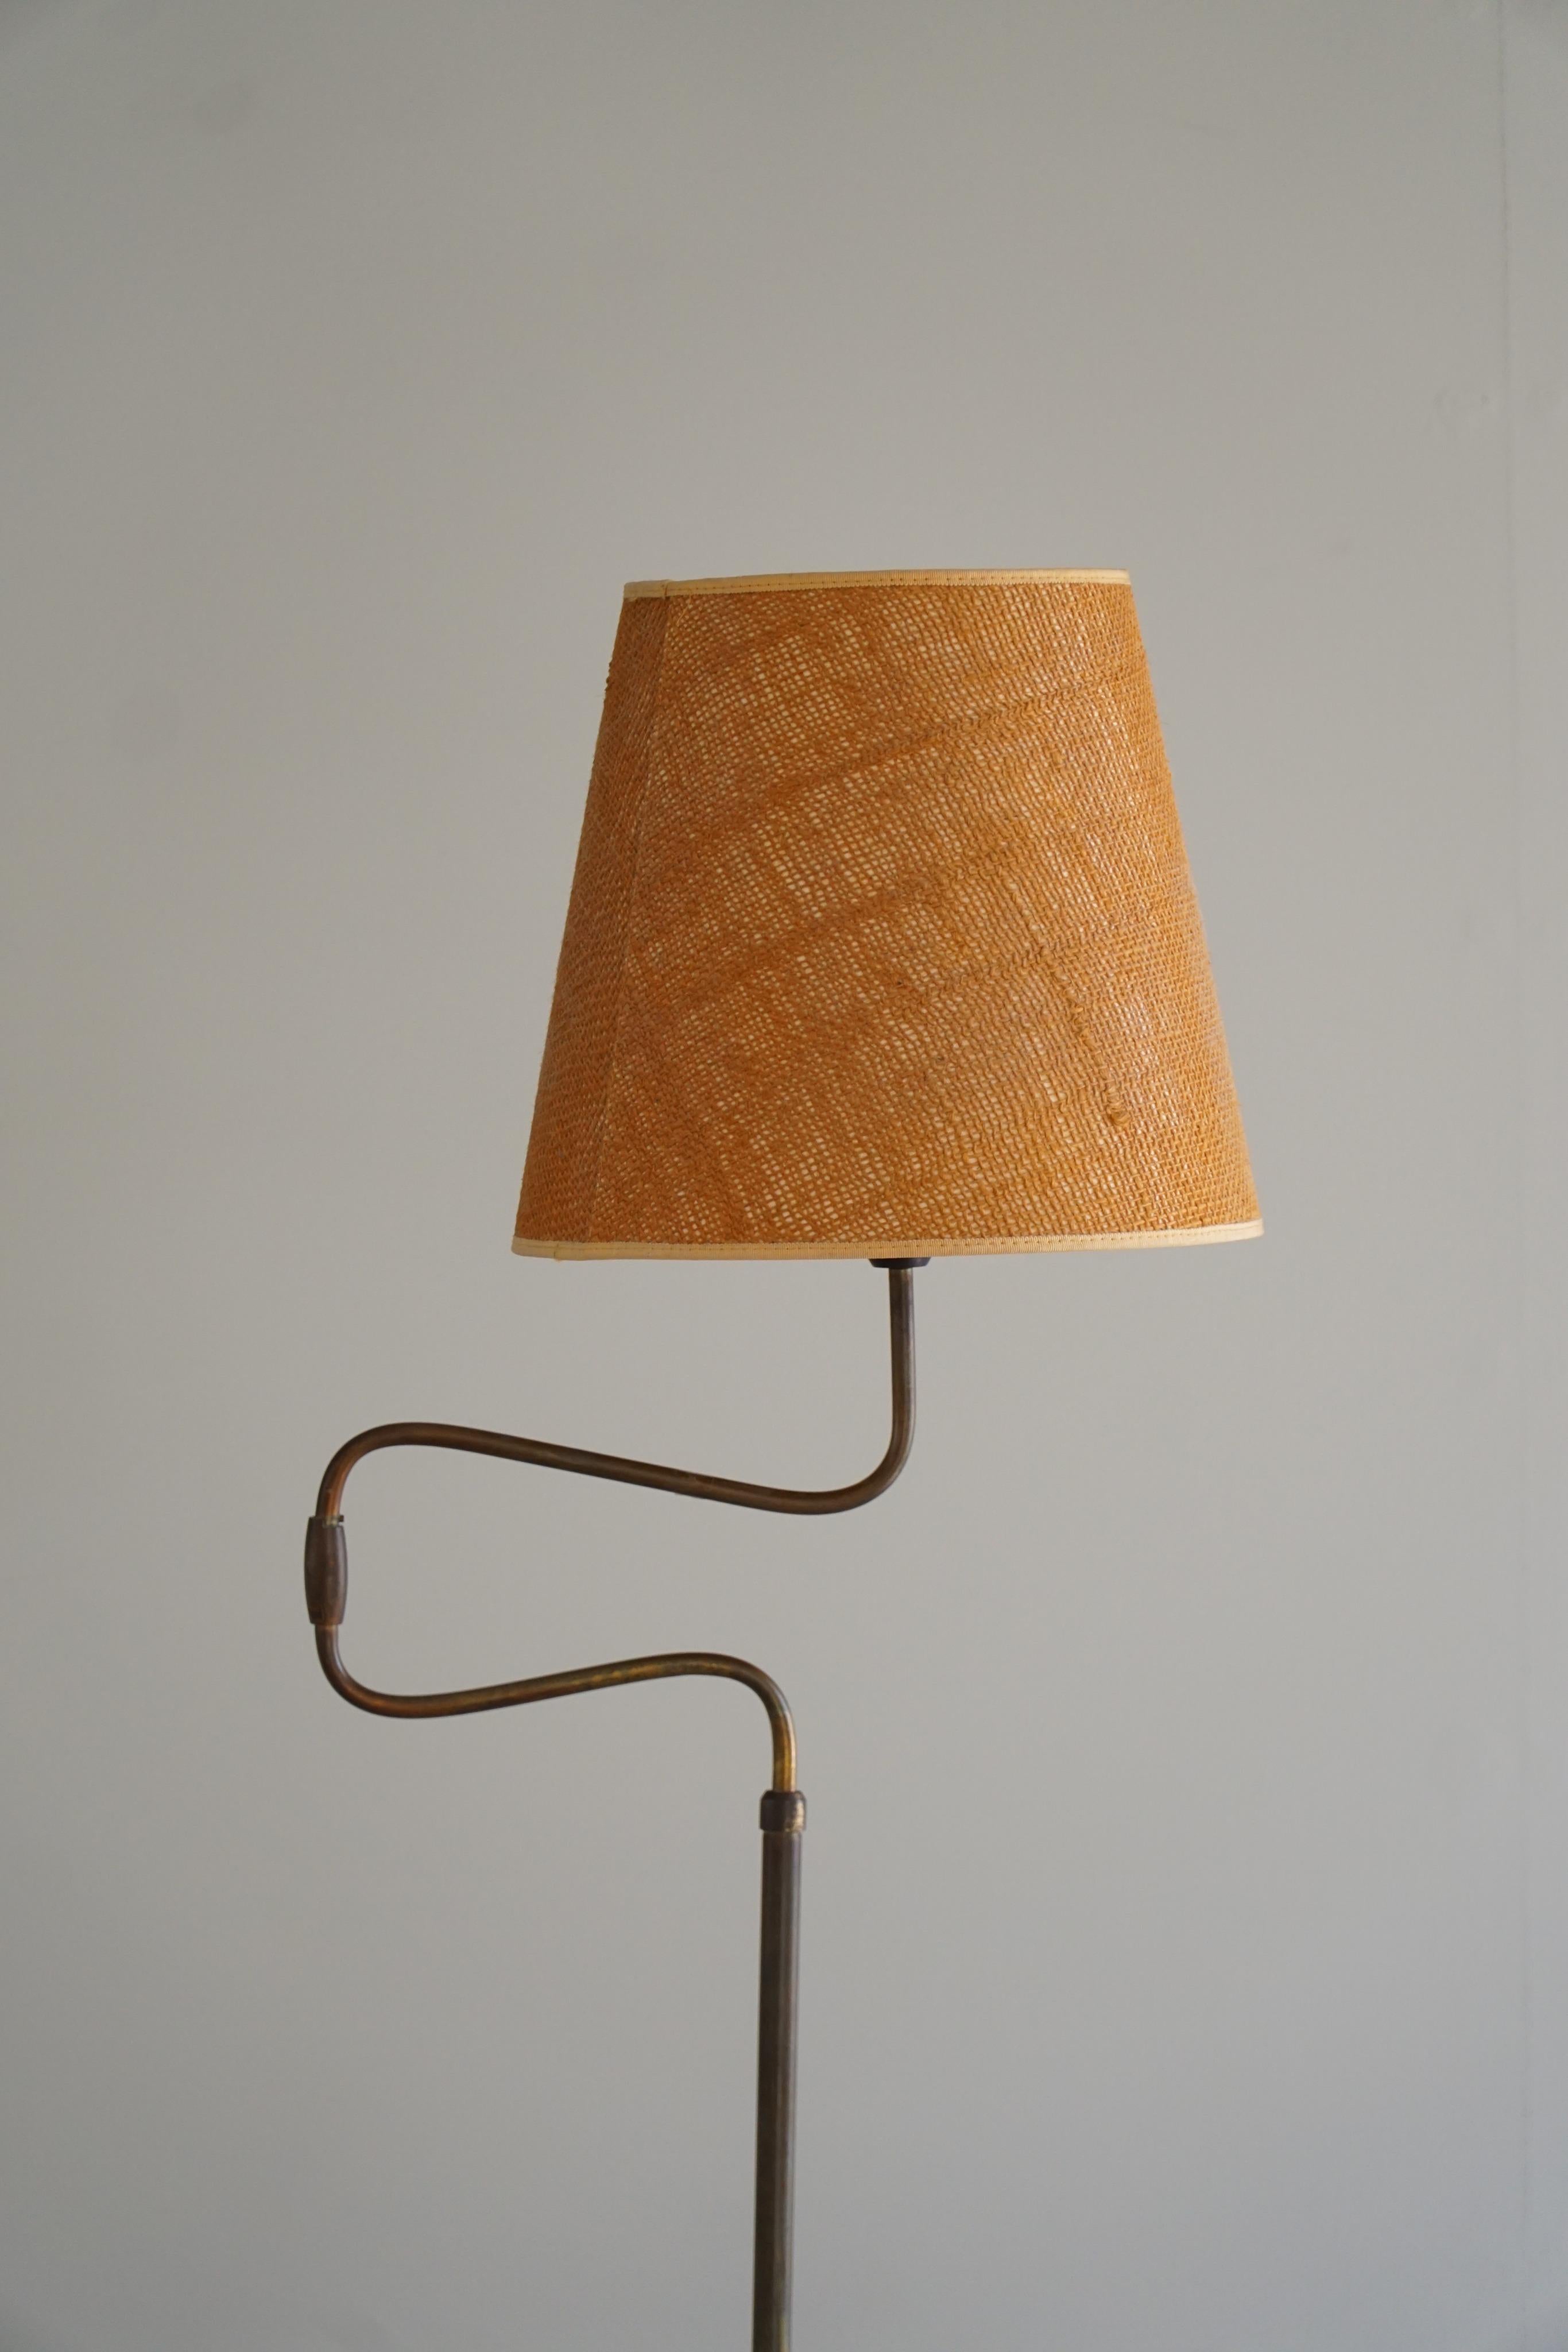 Danish Modern, Adjustable Swing Arm Floor Lamp in Brass, Midcentury, 1950s 5